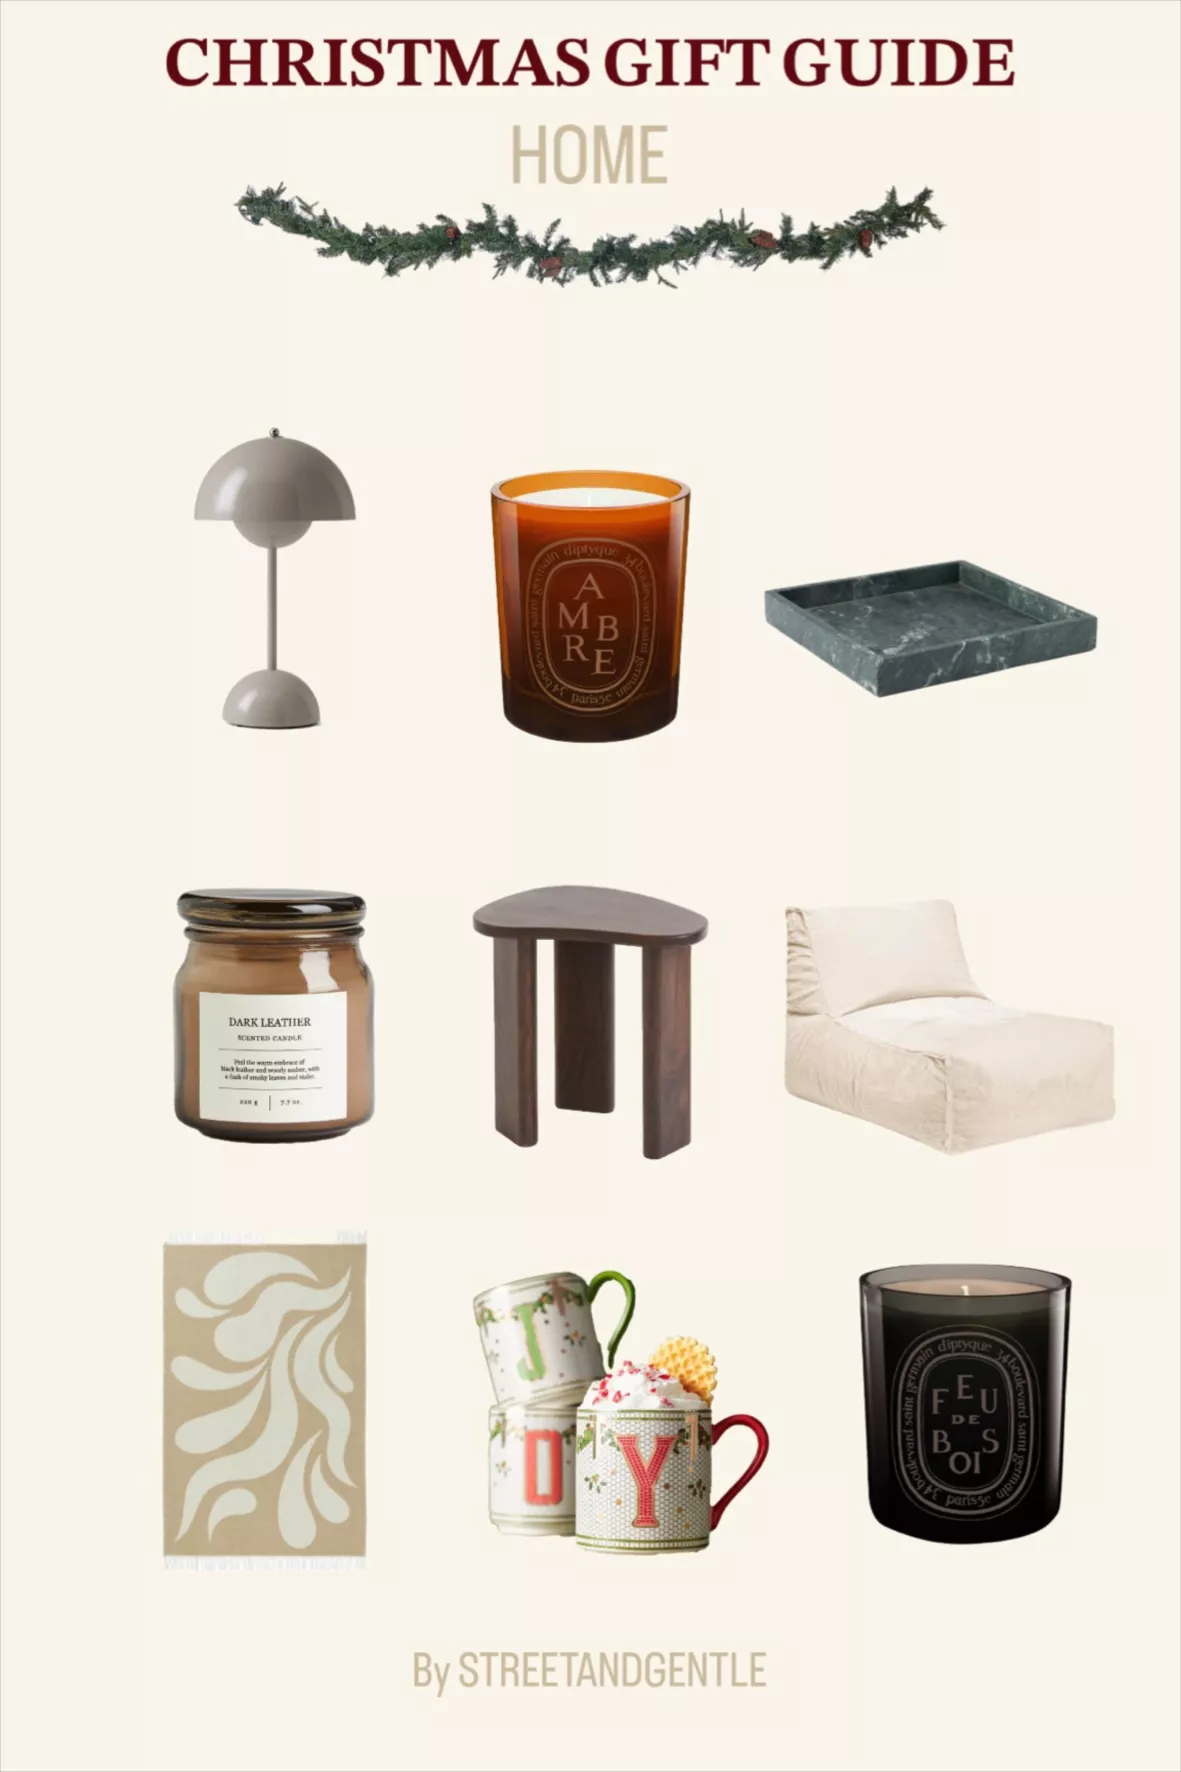 summeradamsdesigns's Stanley Stuff Gift Guide on LTK